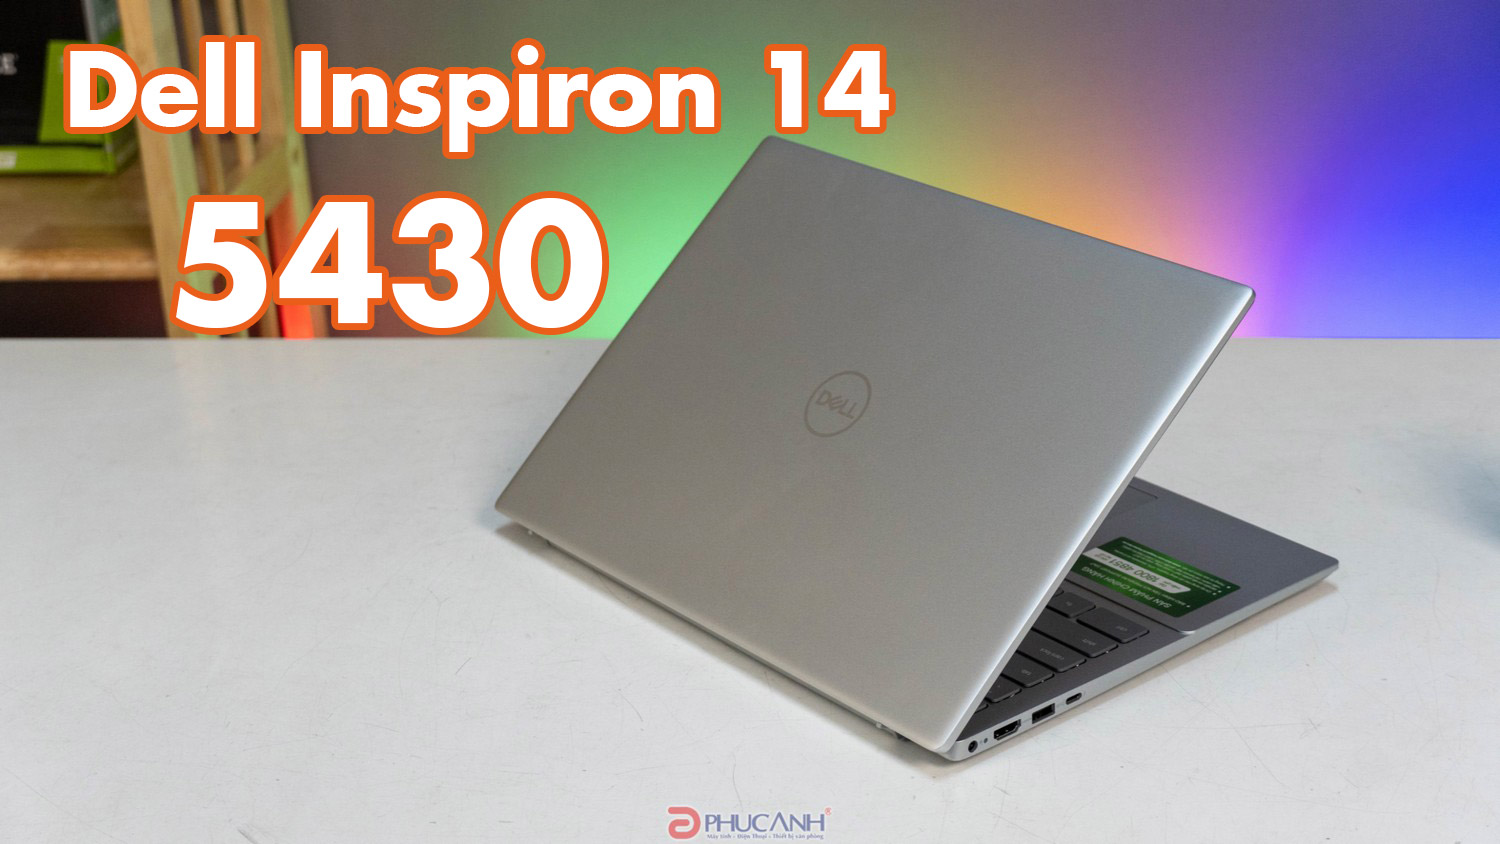 Đánh giá Laptop Dell Inspiron 5430 - Thiết kế sang trọng, cấu hình đa dạng theo nhu cầu